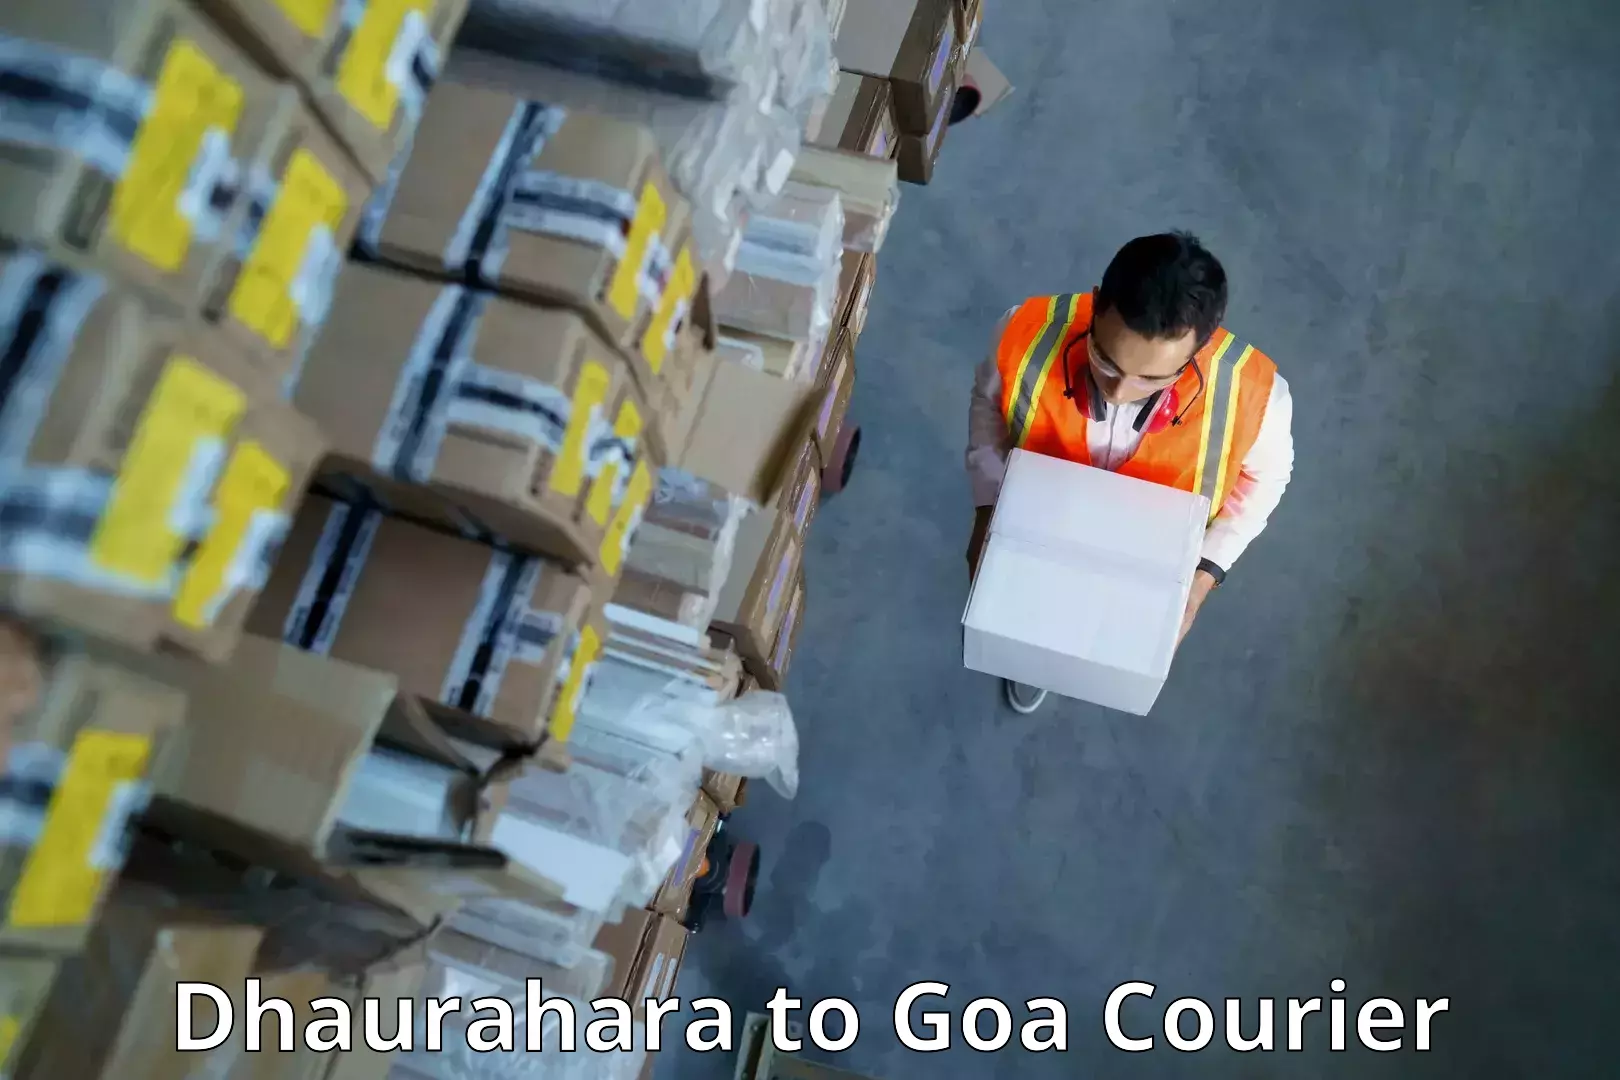 Global logistics network Dhaurahara to Margao